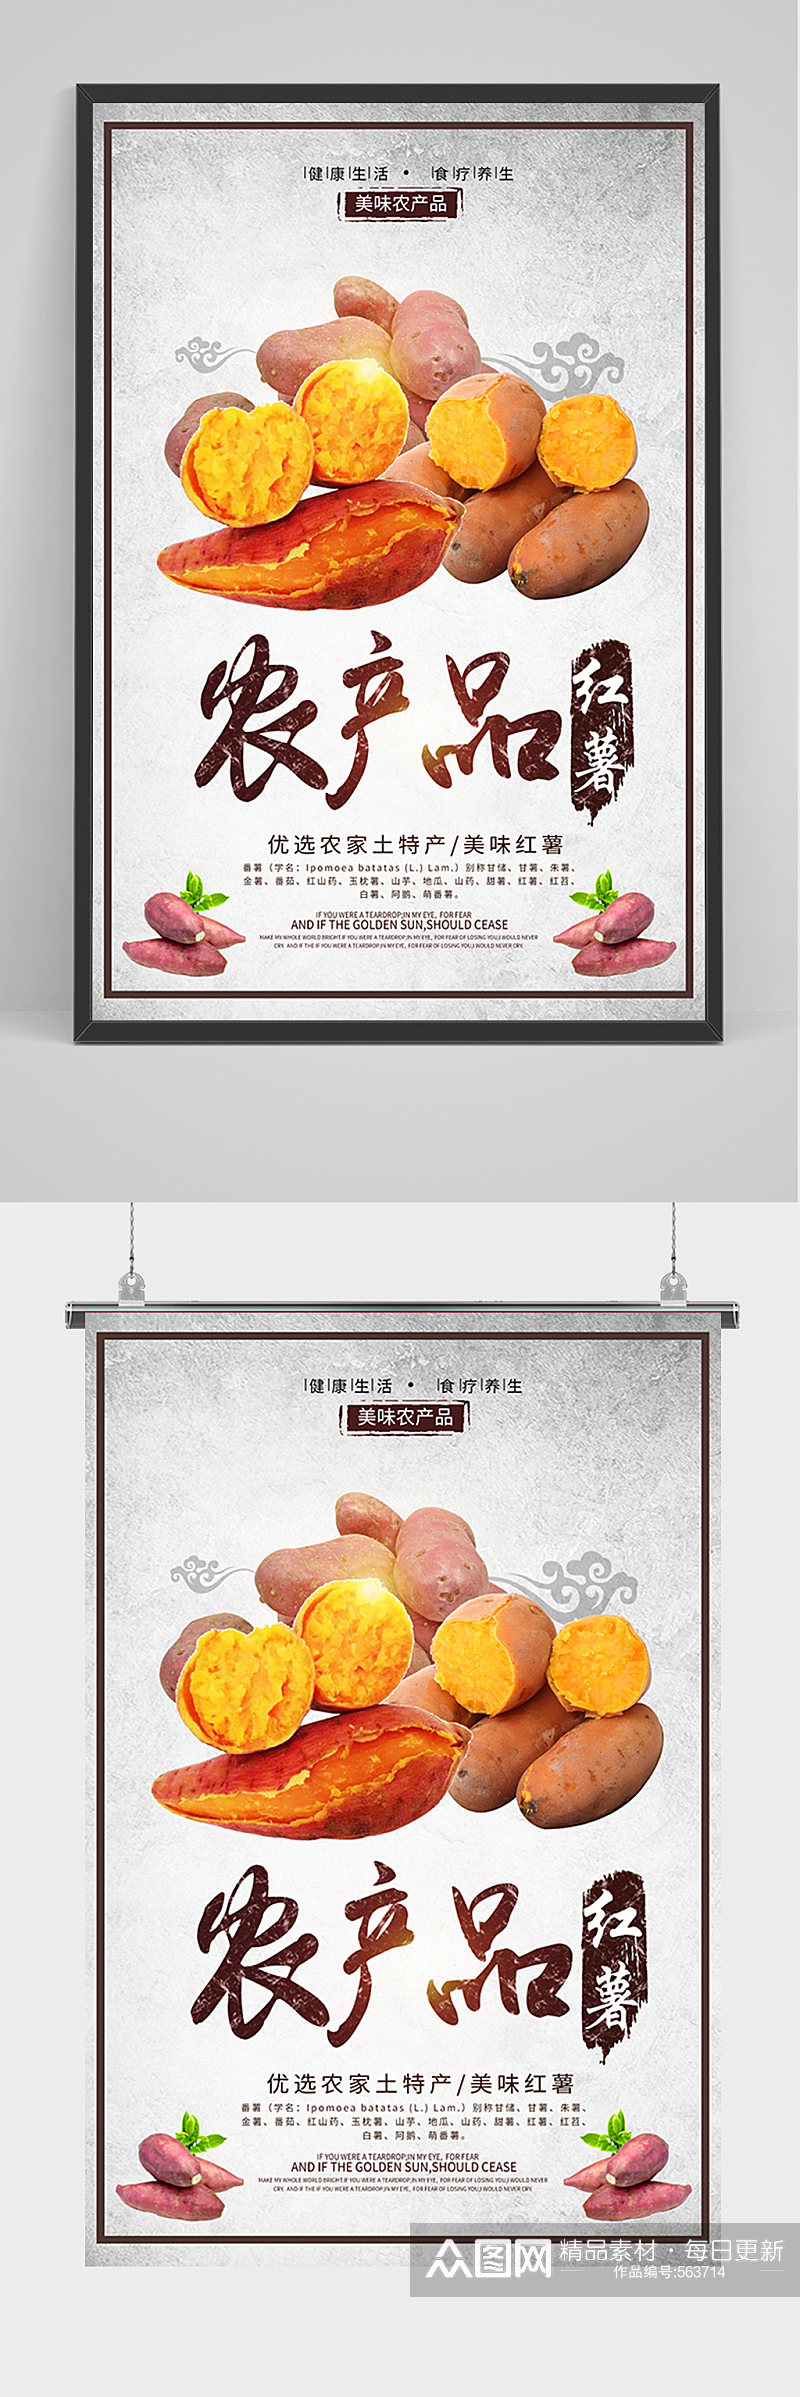 农产品红薯宣传海报素材